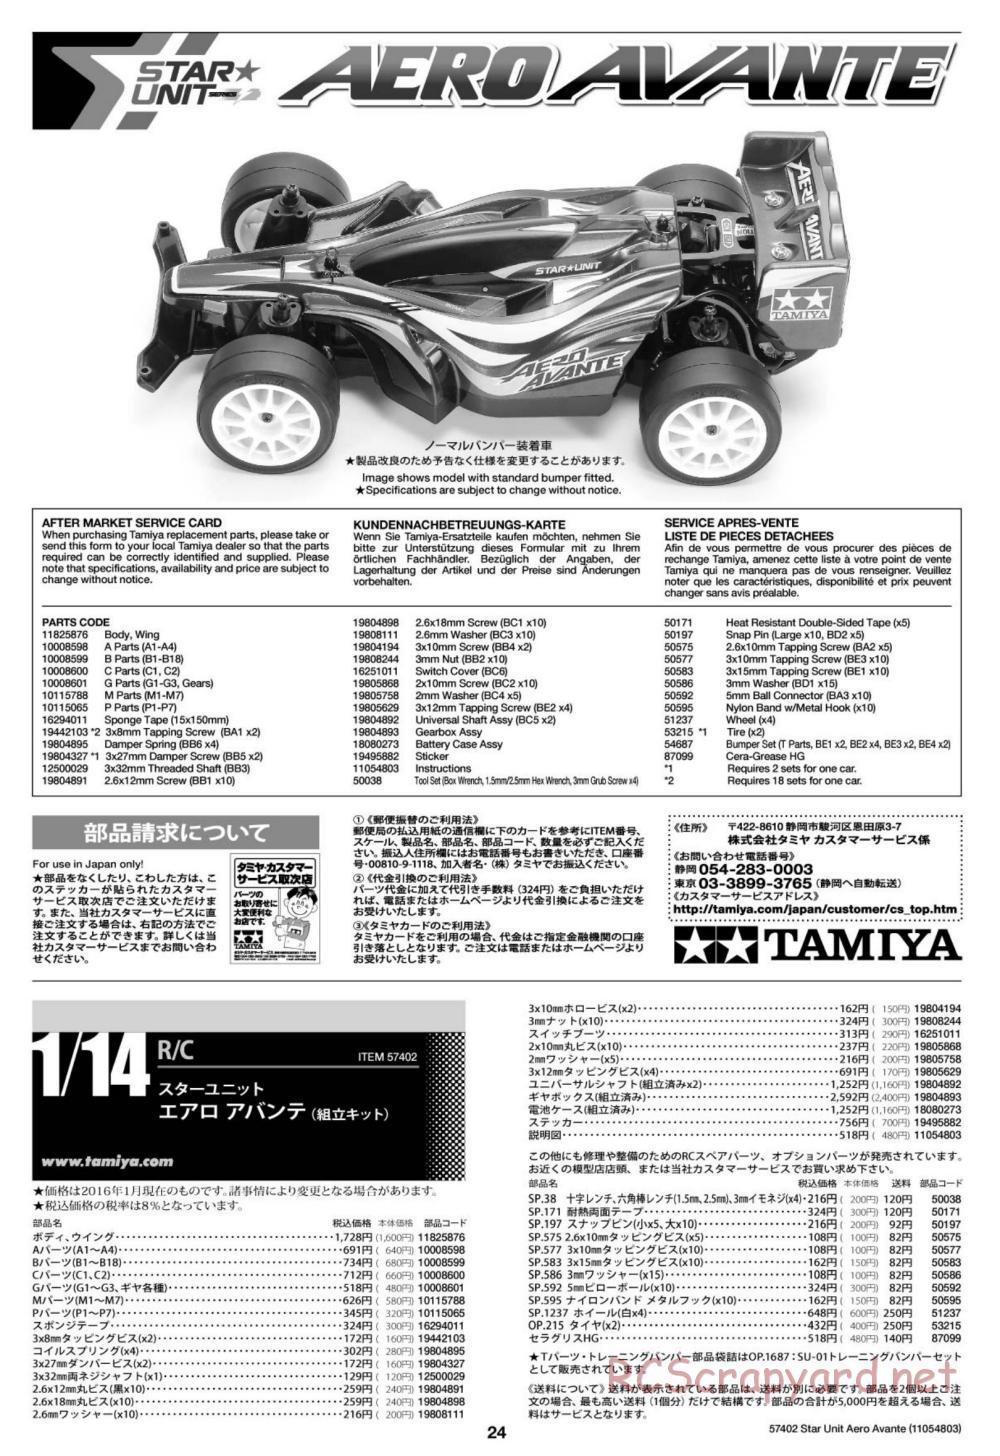 Tamiya - Aero Avante Chassis - Manual - Page 24